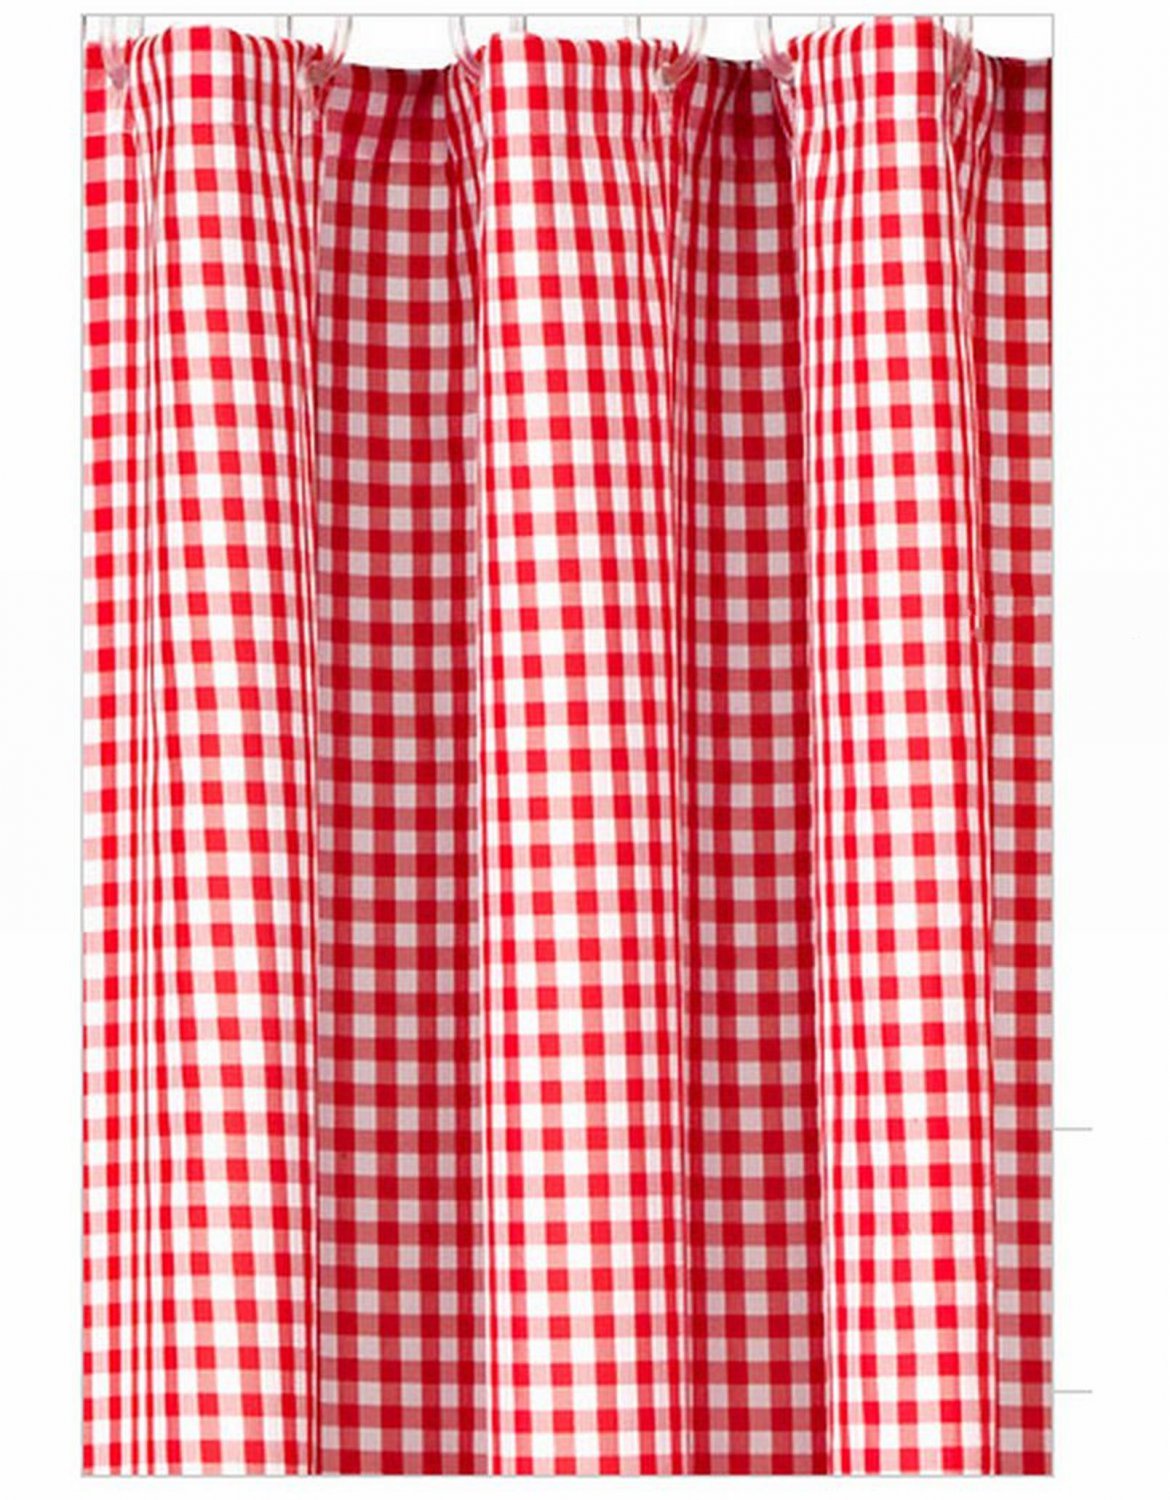 IKEA MARGARETA Fabric SHOWER Curtain RED White CHECKED Gingham XMAS